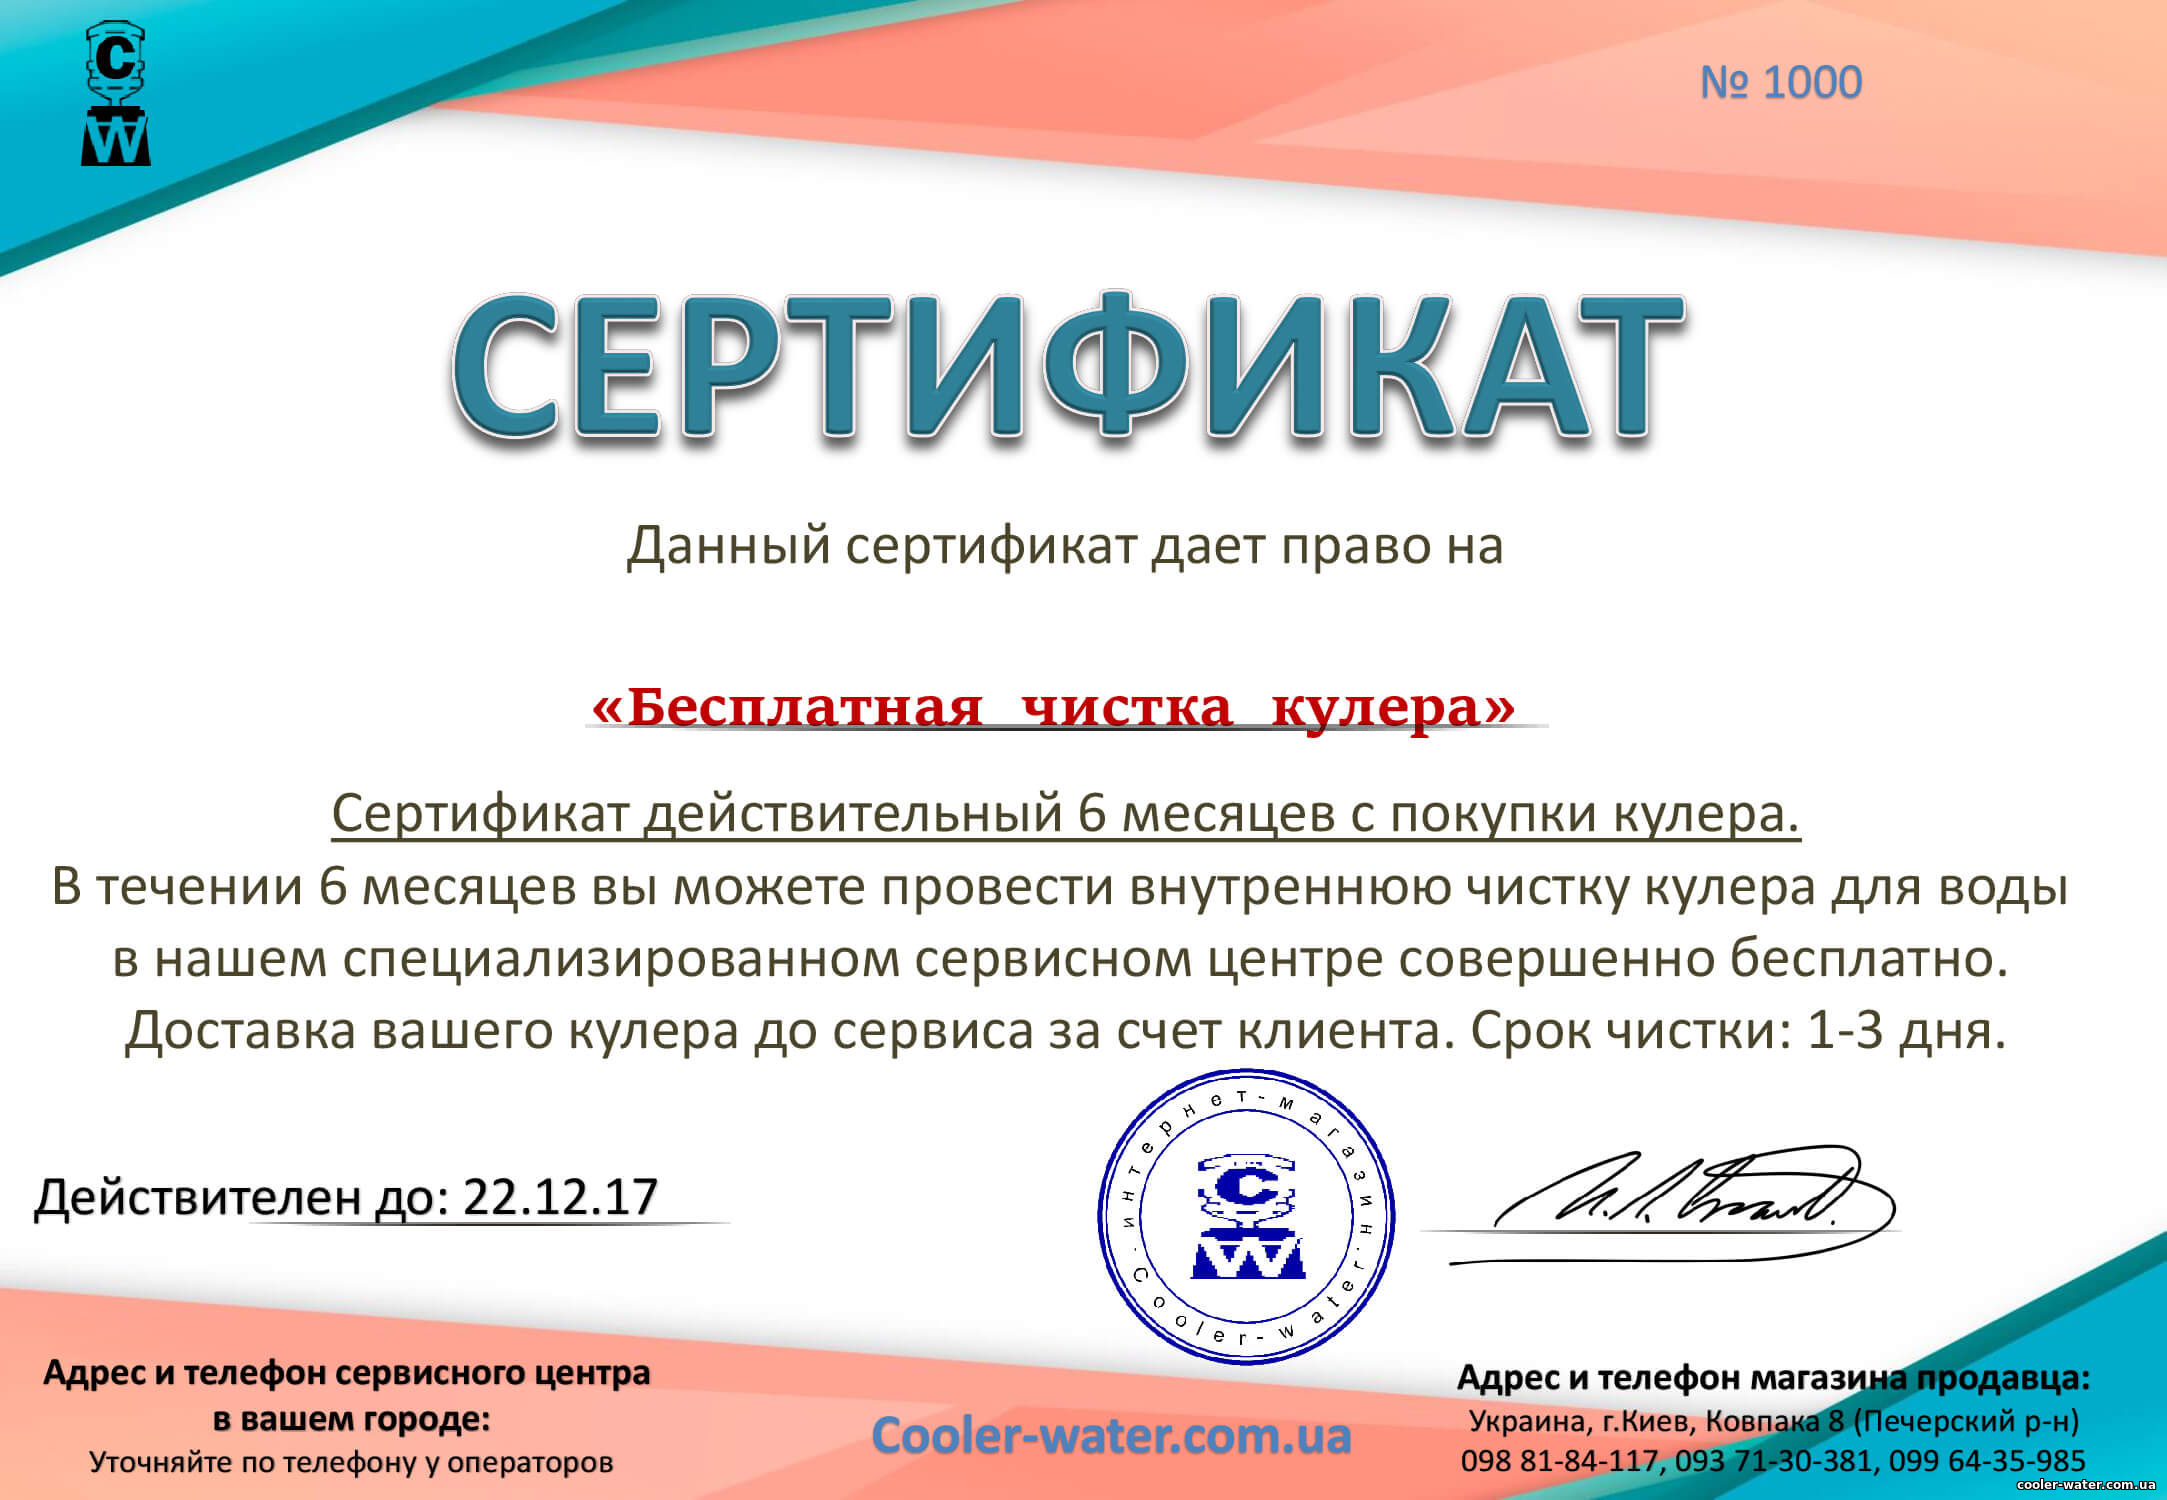 Сертификат на чистку кулера в ПОДАРОК